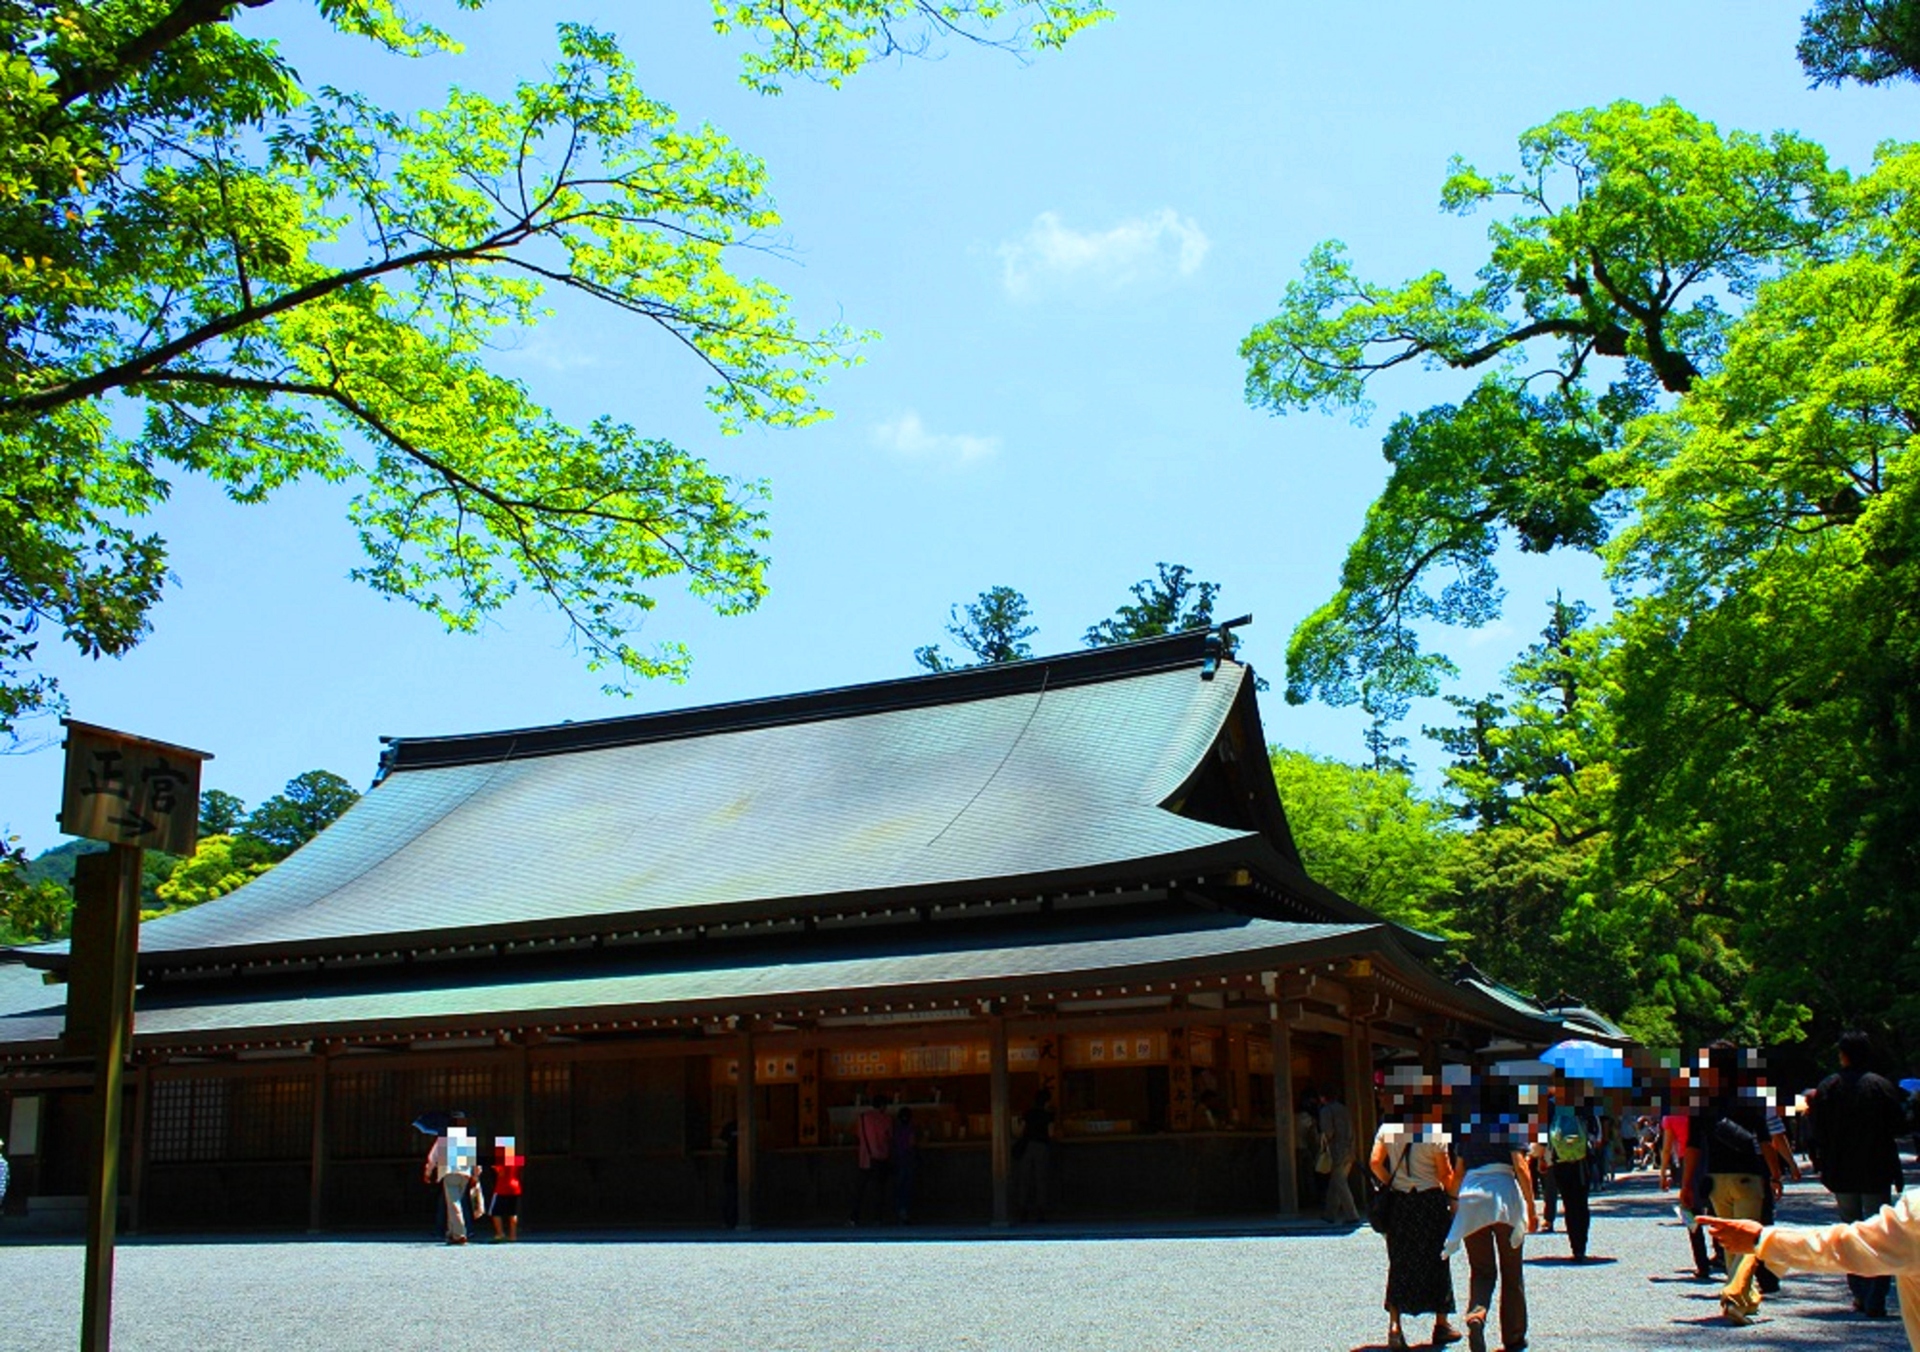 日本の風景 新緑の伊勢神宮 壁紙19x1352 壁紙館